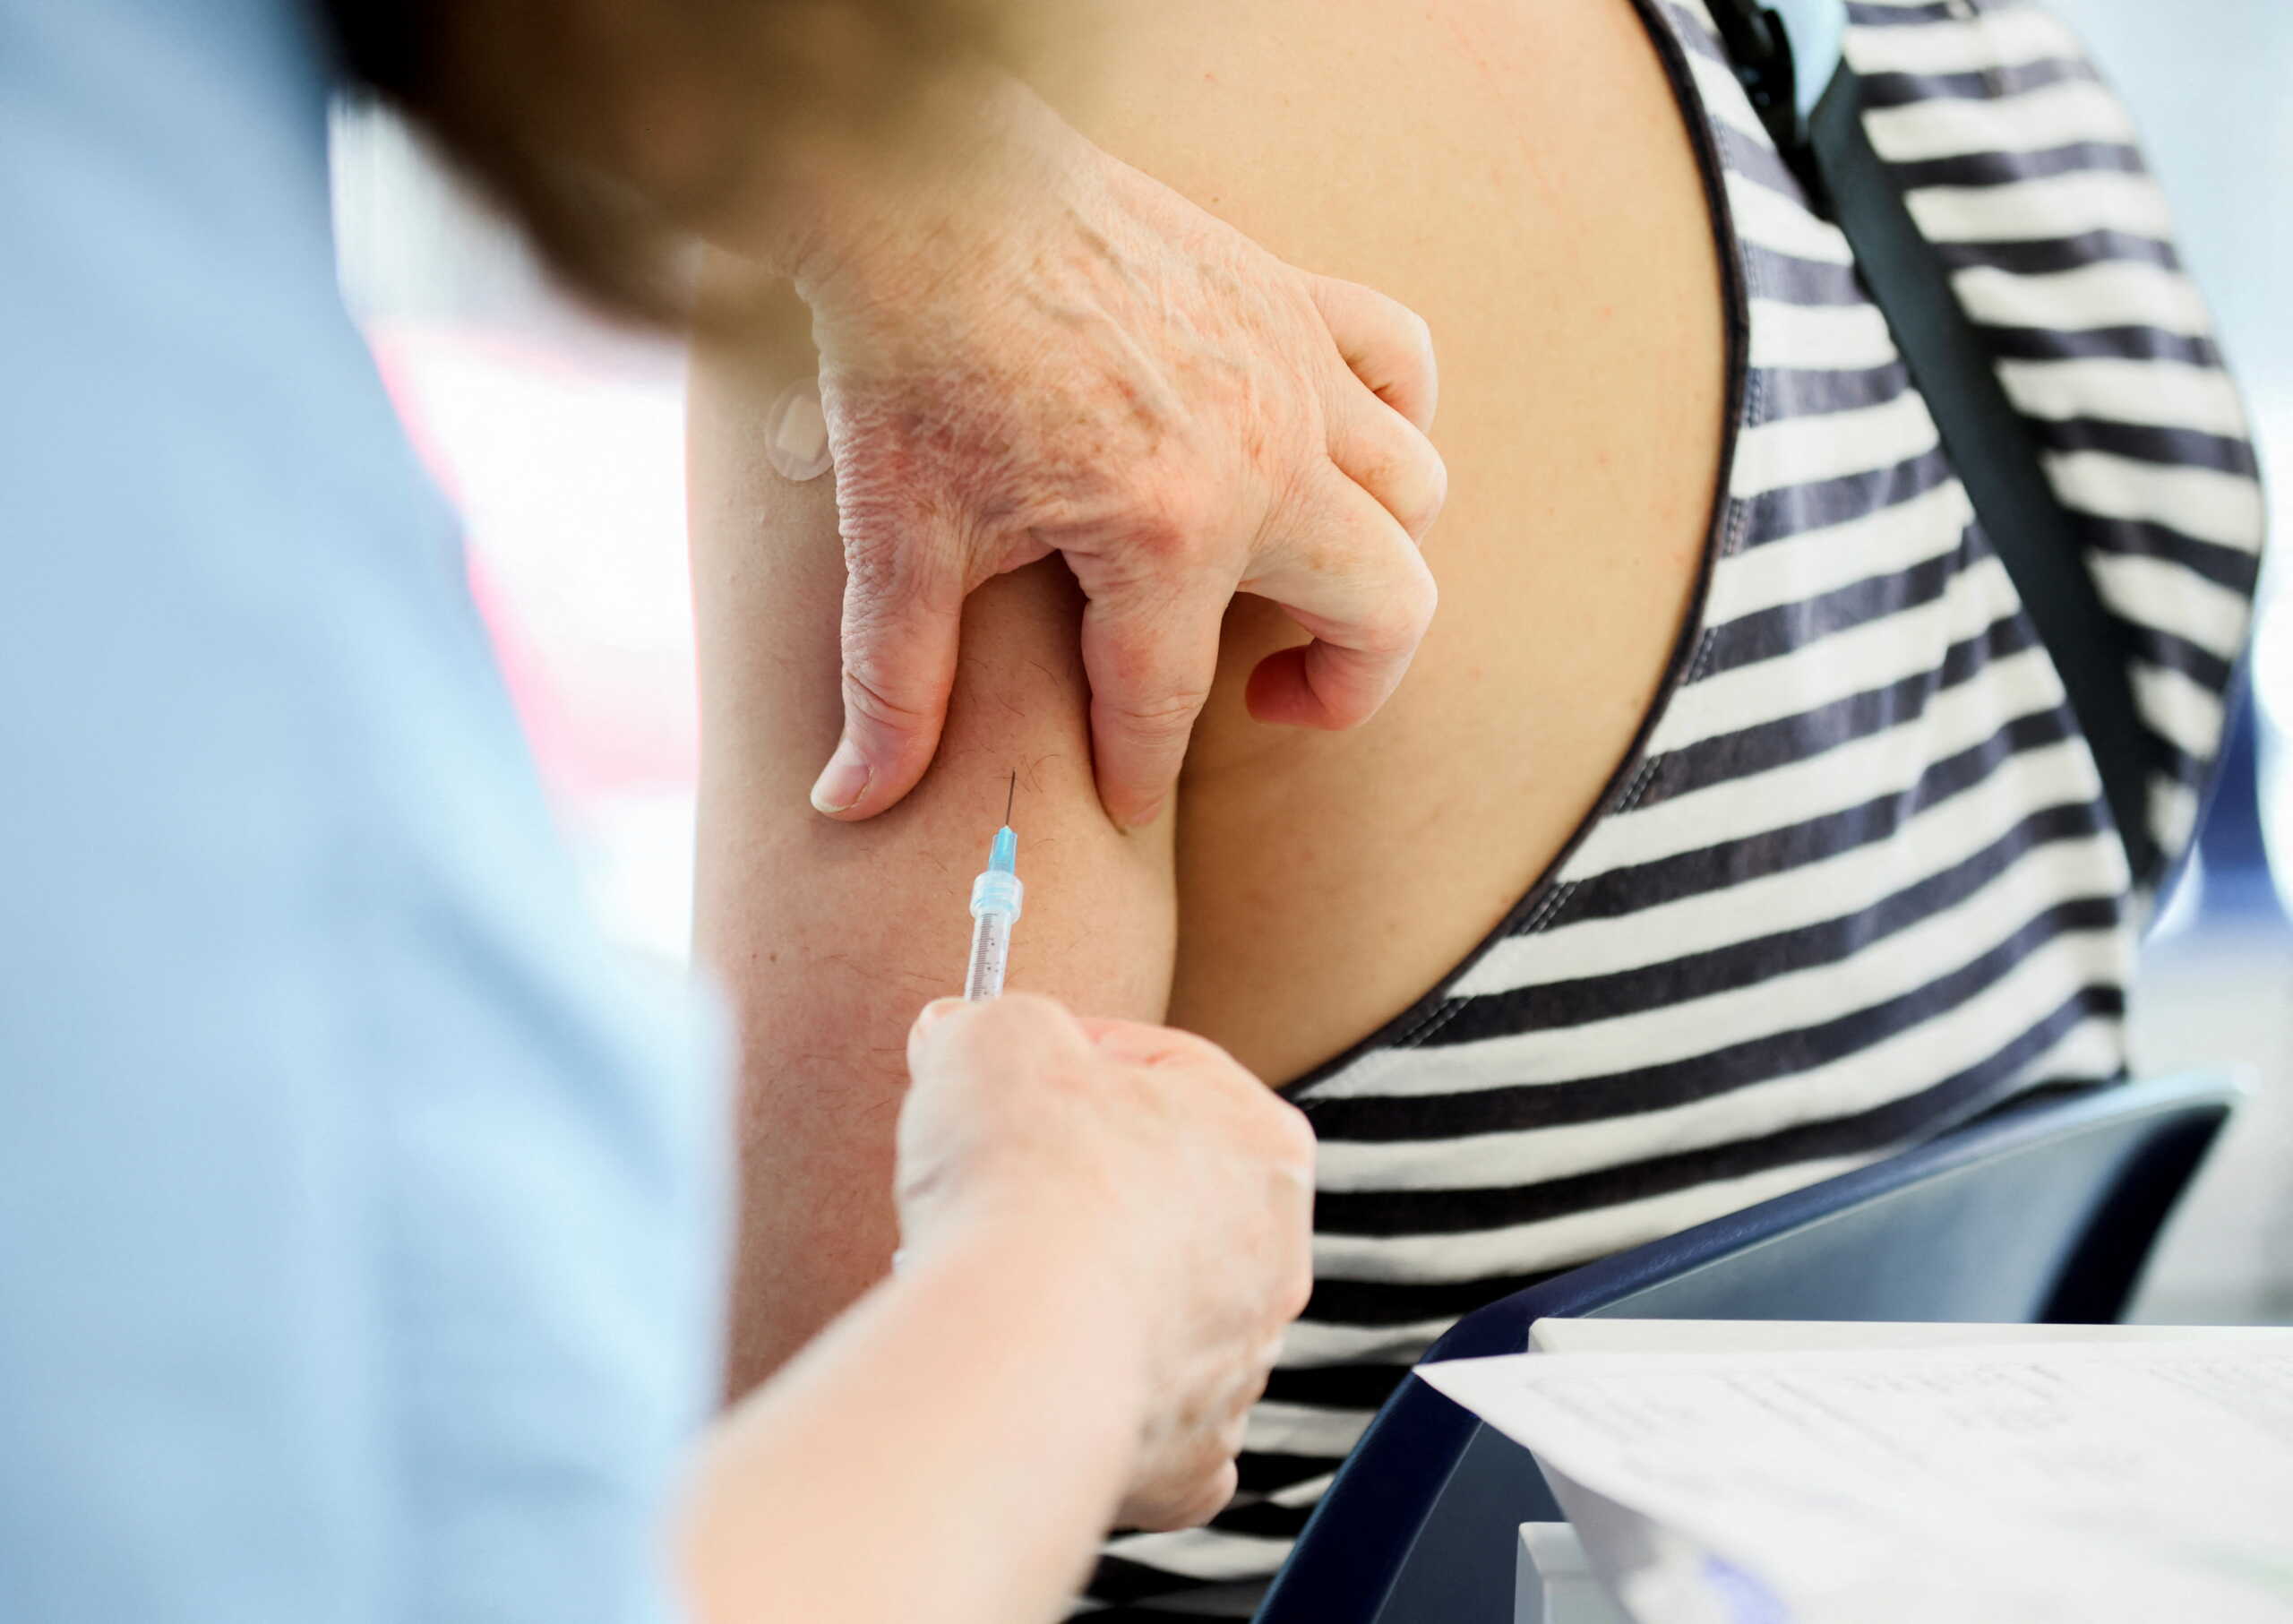 Κορονοϊός: Εμβολιασμός μέσα στο καλοκαίρι «ασπίδα» στις μεταλλάξεις 4 και 5 – Συνεδριάζει η Επιτροπή Εμβολιασμών